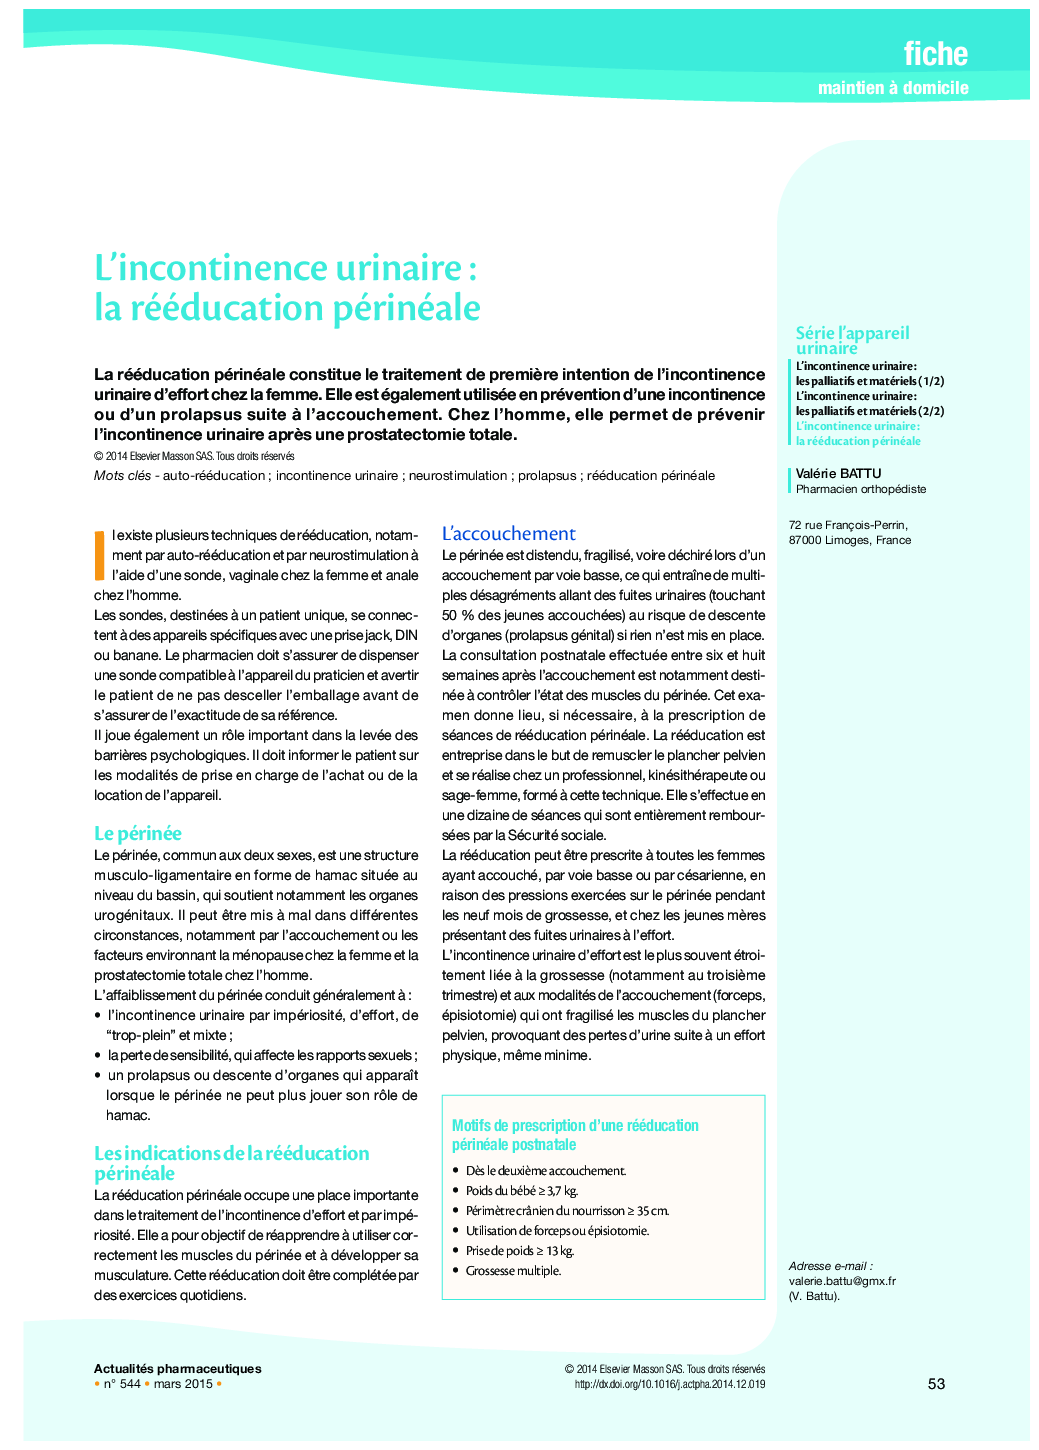 L’incontinence urinaire : la rééducation périnéale